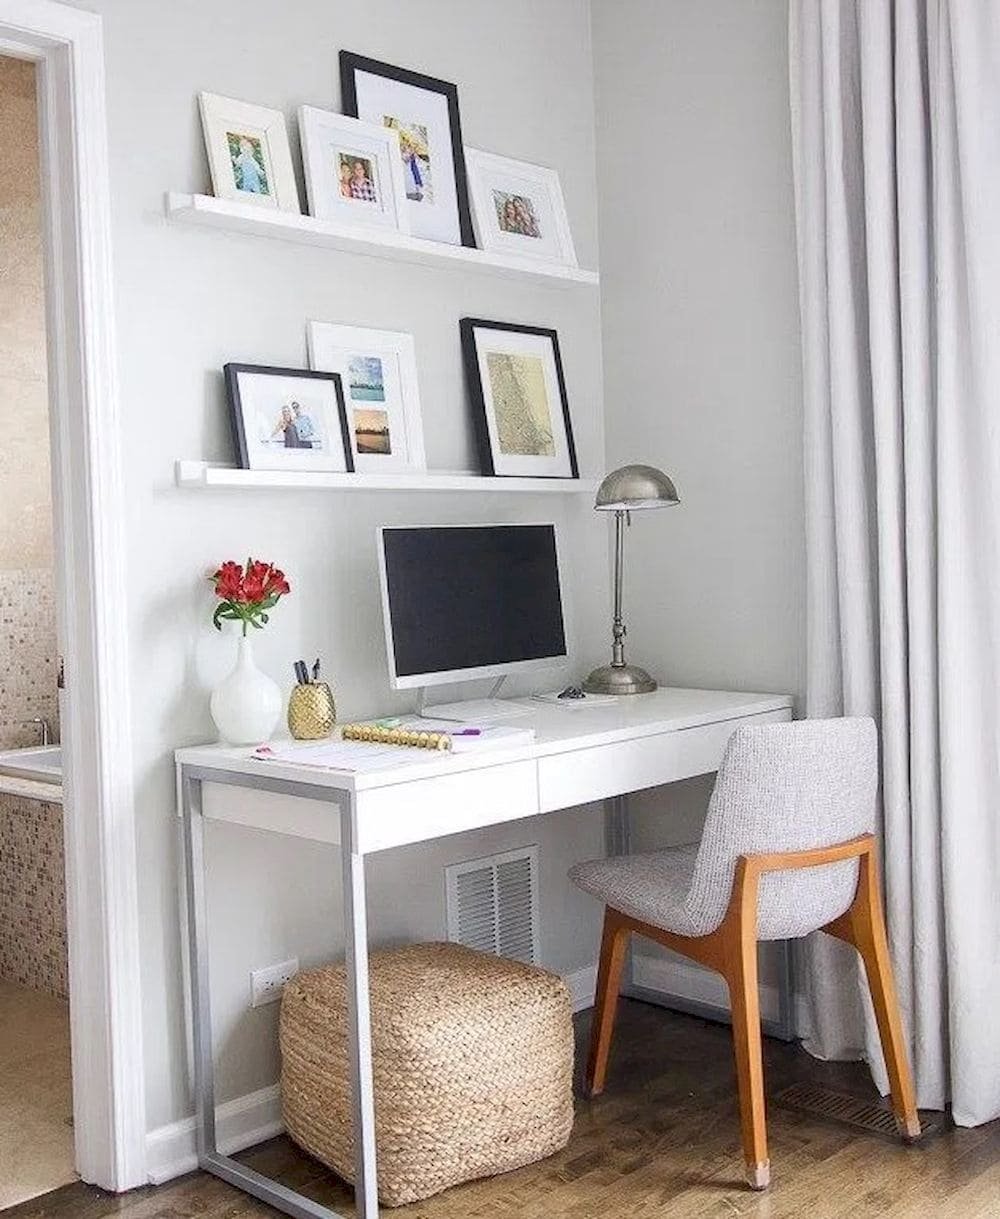 Письменный стол в спальне. Рабочее место в спальне. Письменный стол в маленькую комнату. Спальня с раьочим место. Маленькое рабочее место в спальне.